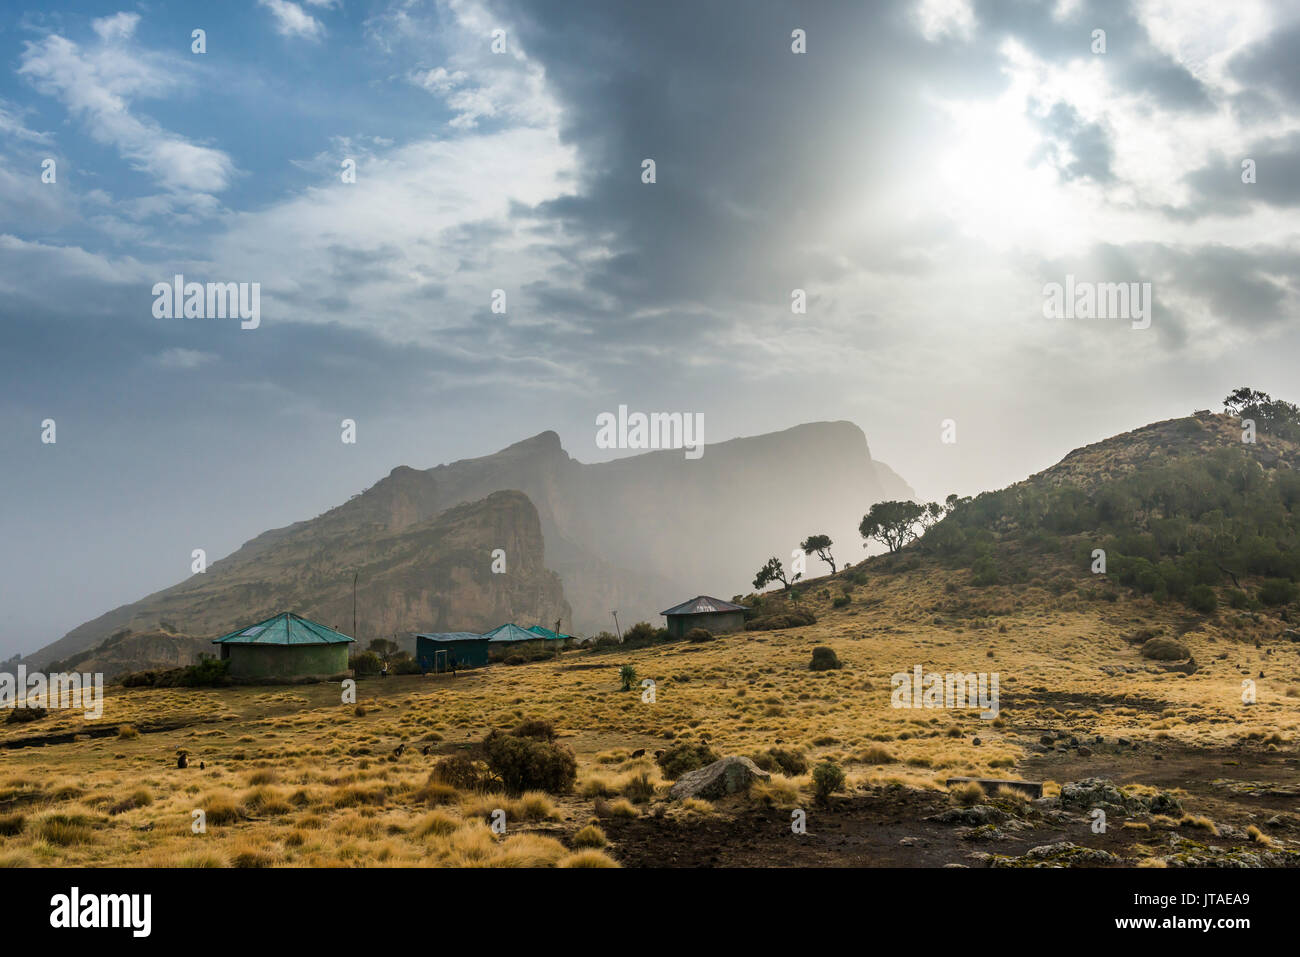 Soleil sur le parc national des montagnes du Simien, UNESCO World Heritage Site, Debarq, Ethiopie, Afrique Banque D'Images